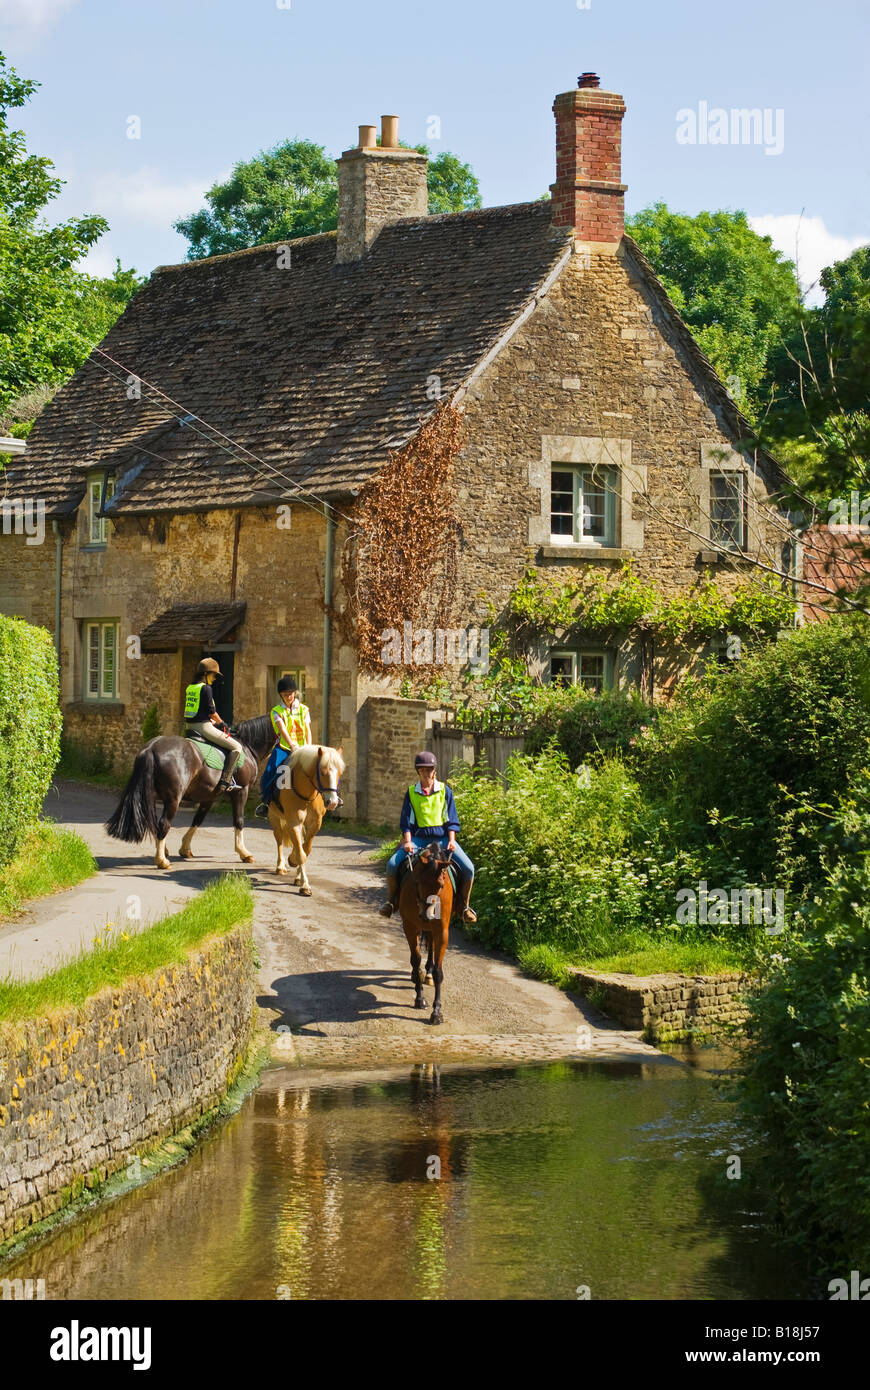 Jungen Reitern in der ruhigen historischen englischen Dorf Lacock Stockfoto